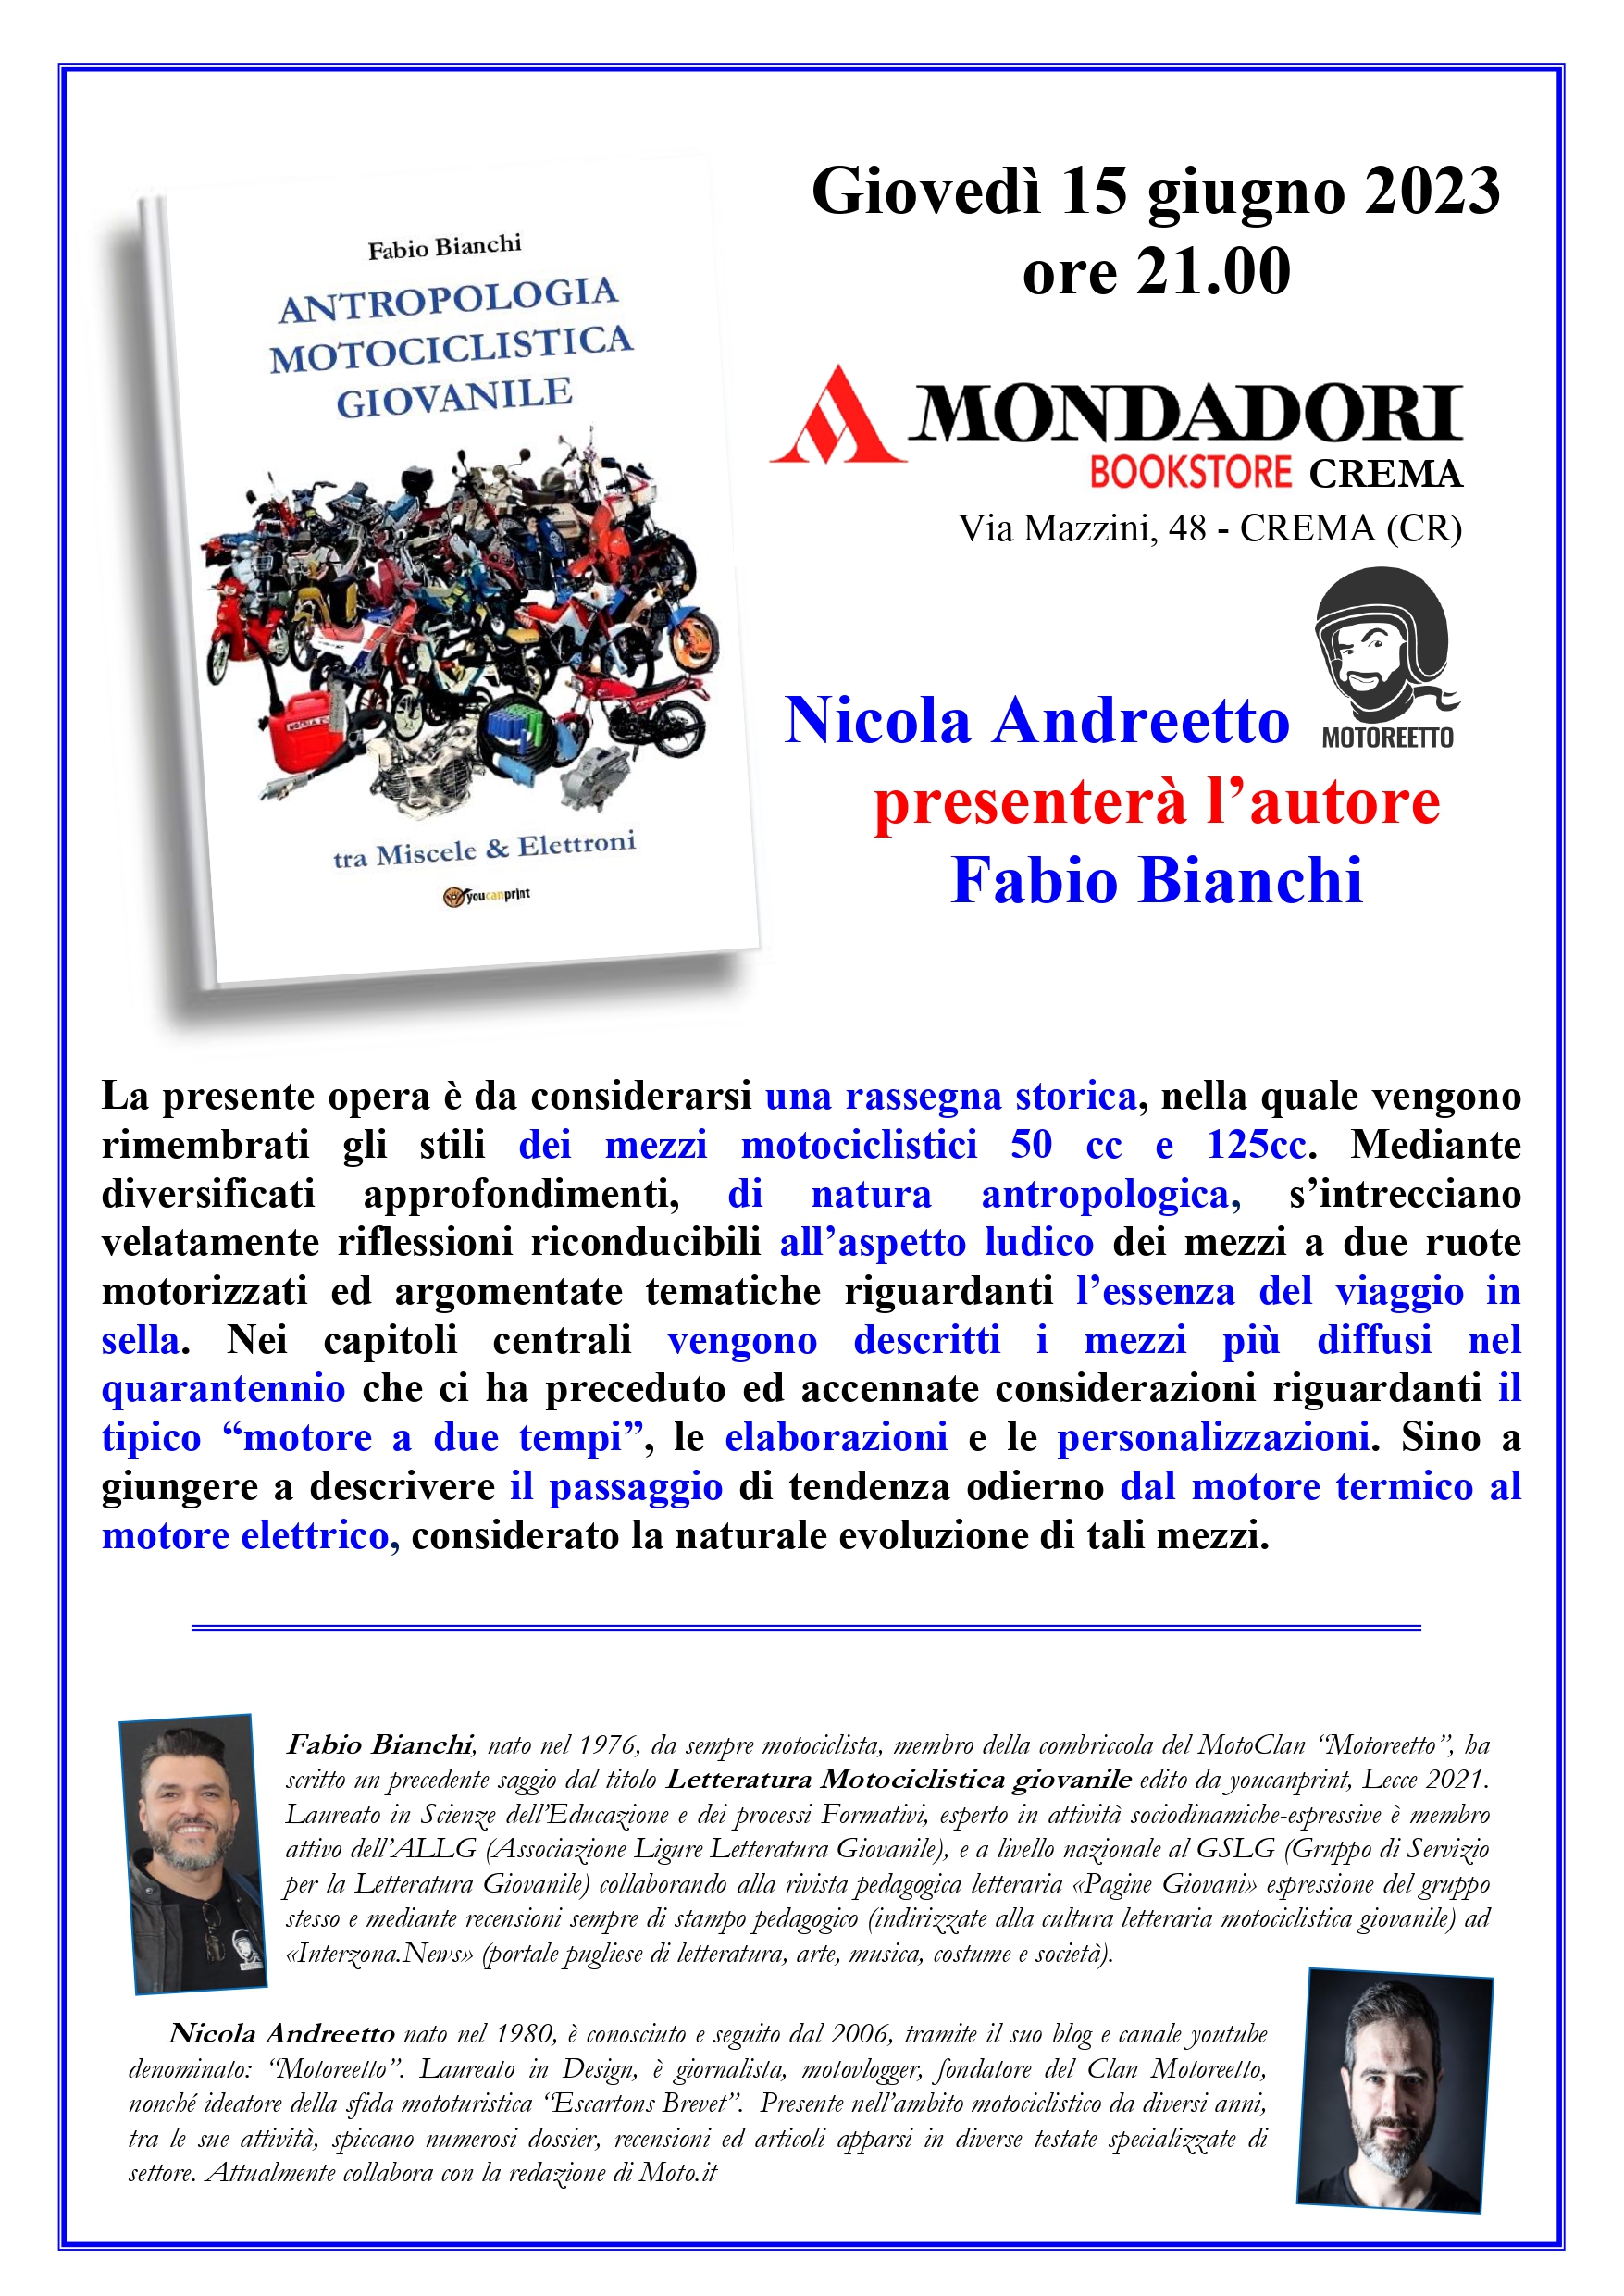 Mondadori Crema, presentazione del libro Antropologia motociclistica giovanile